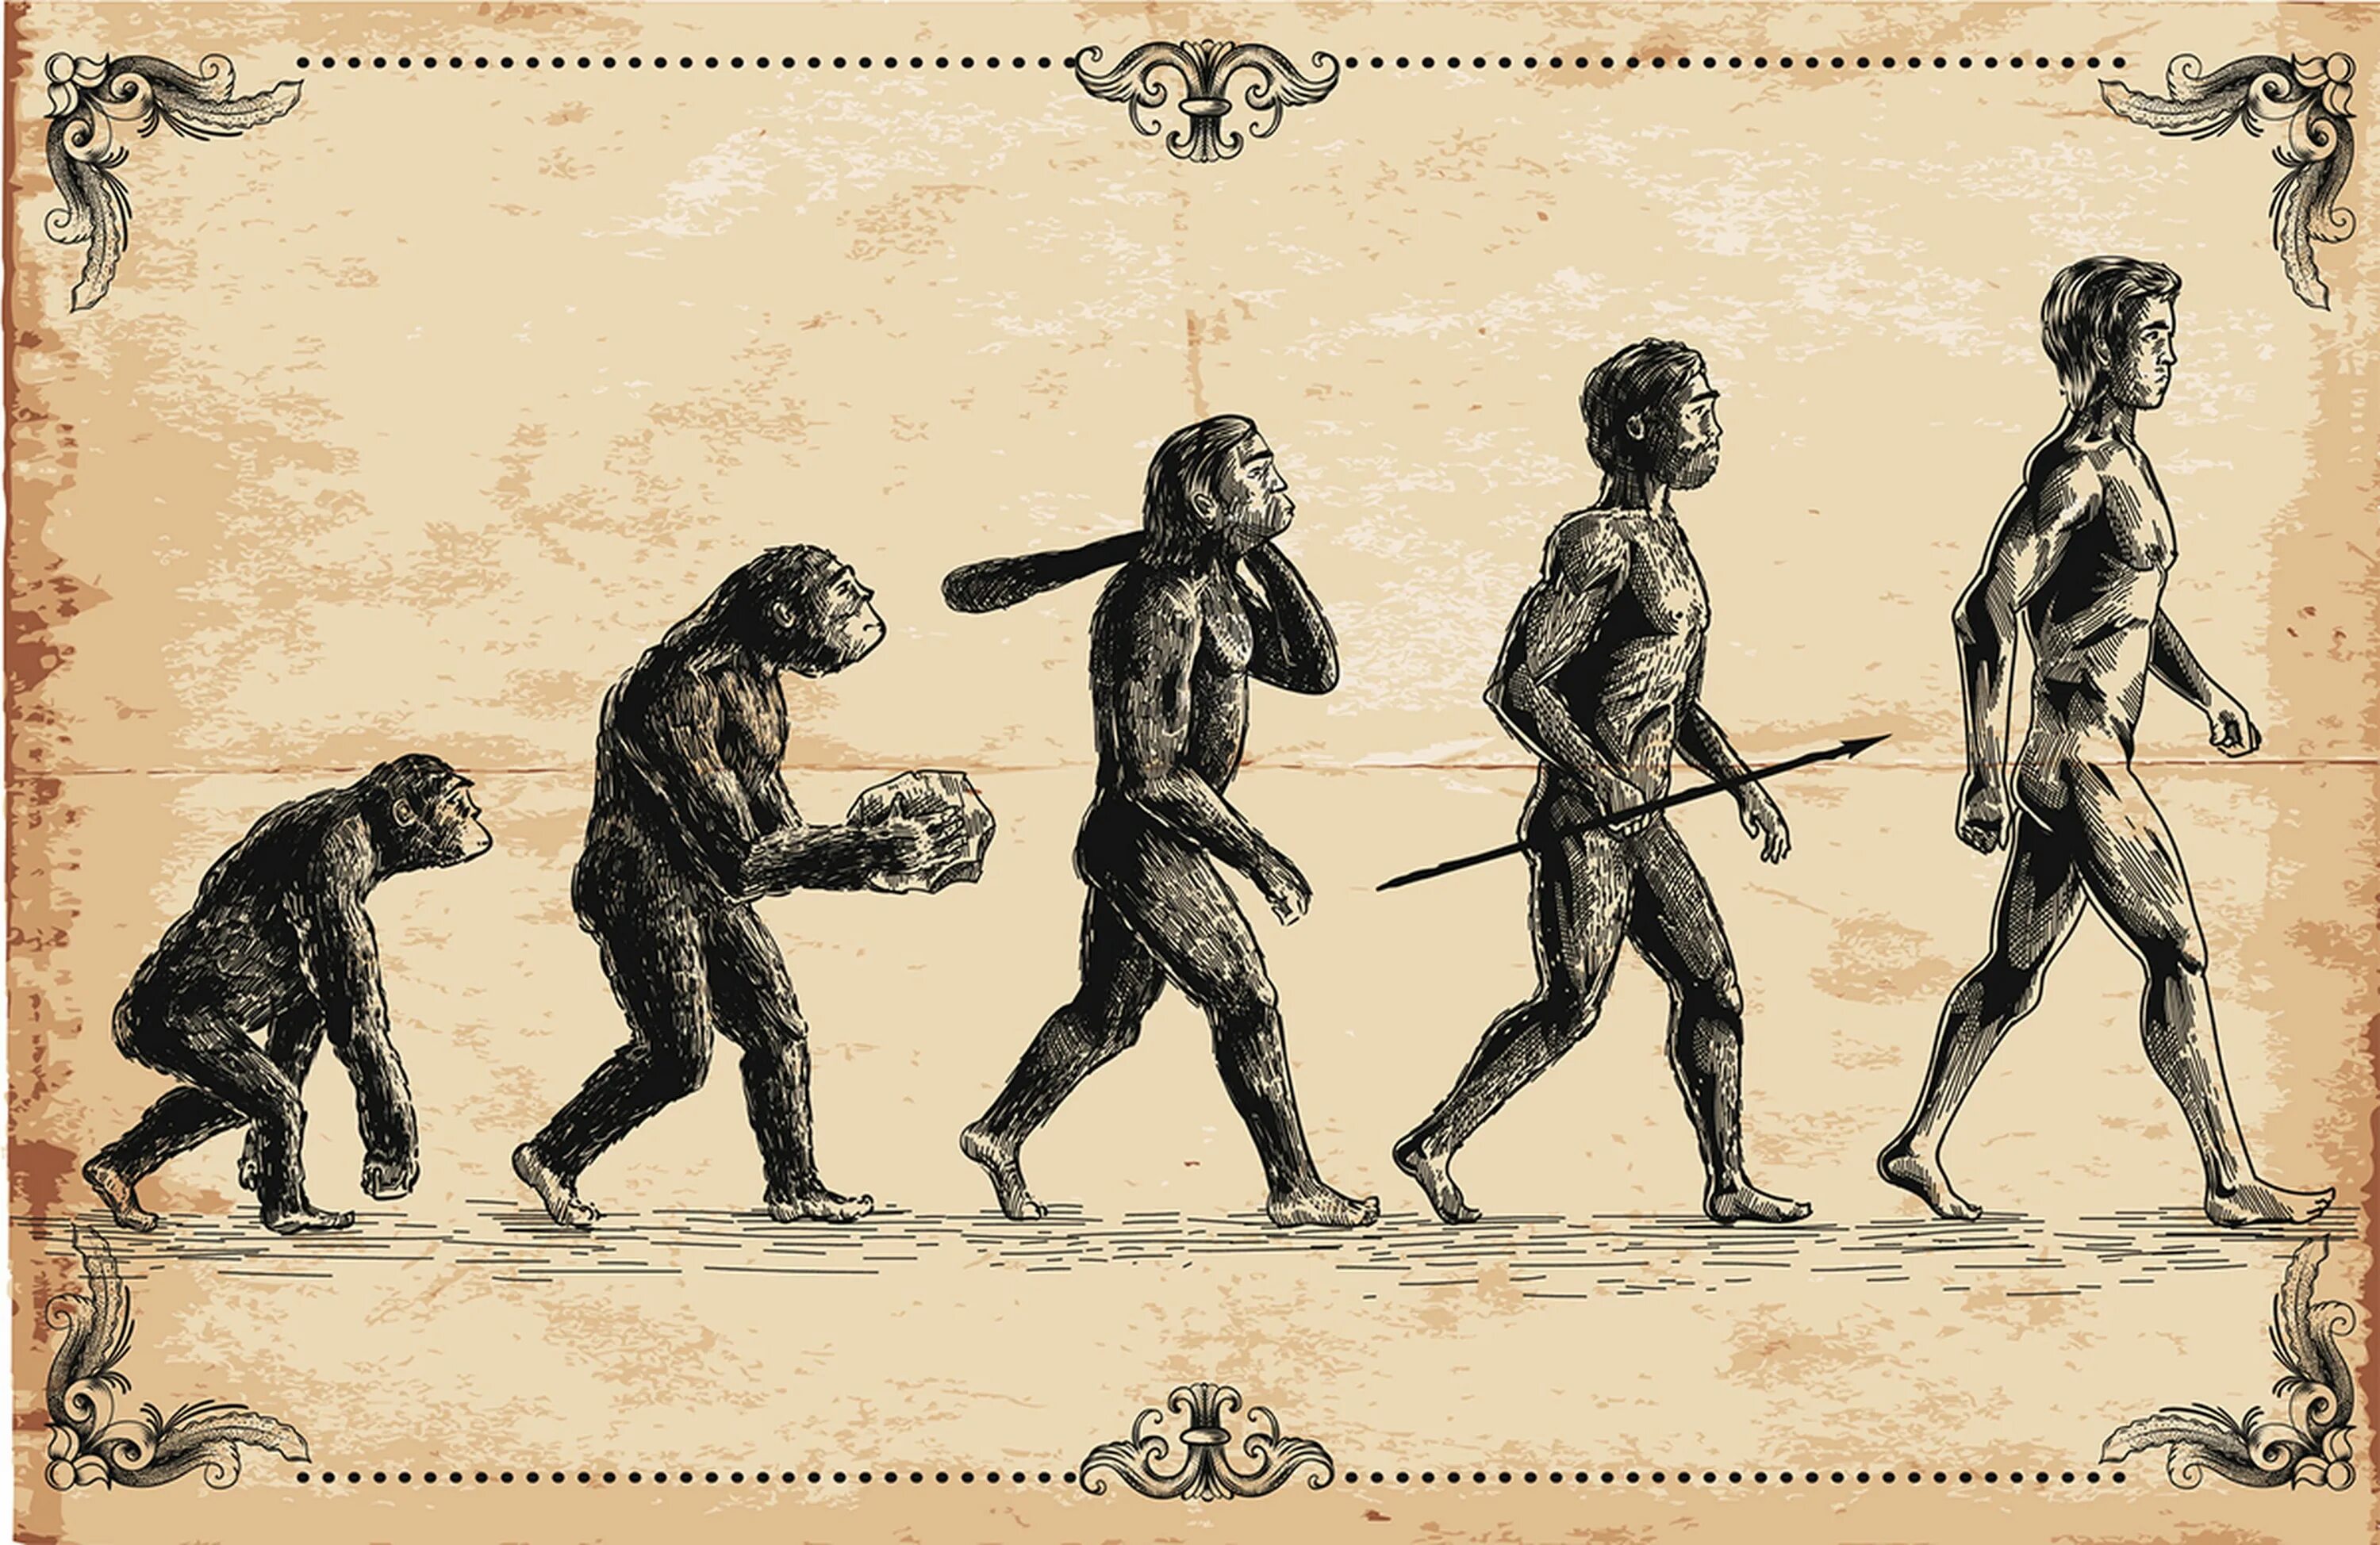 Становление человеческого в человеке. Эволюция человека homo sapiens. Теория Дарвина о эволюции человека.